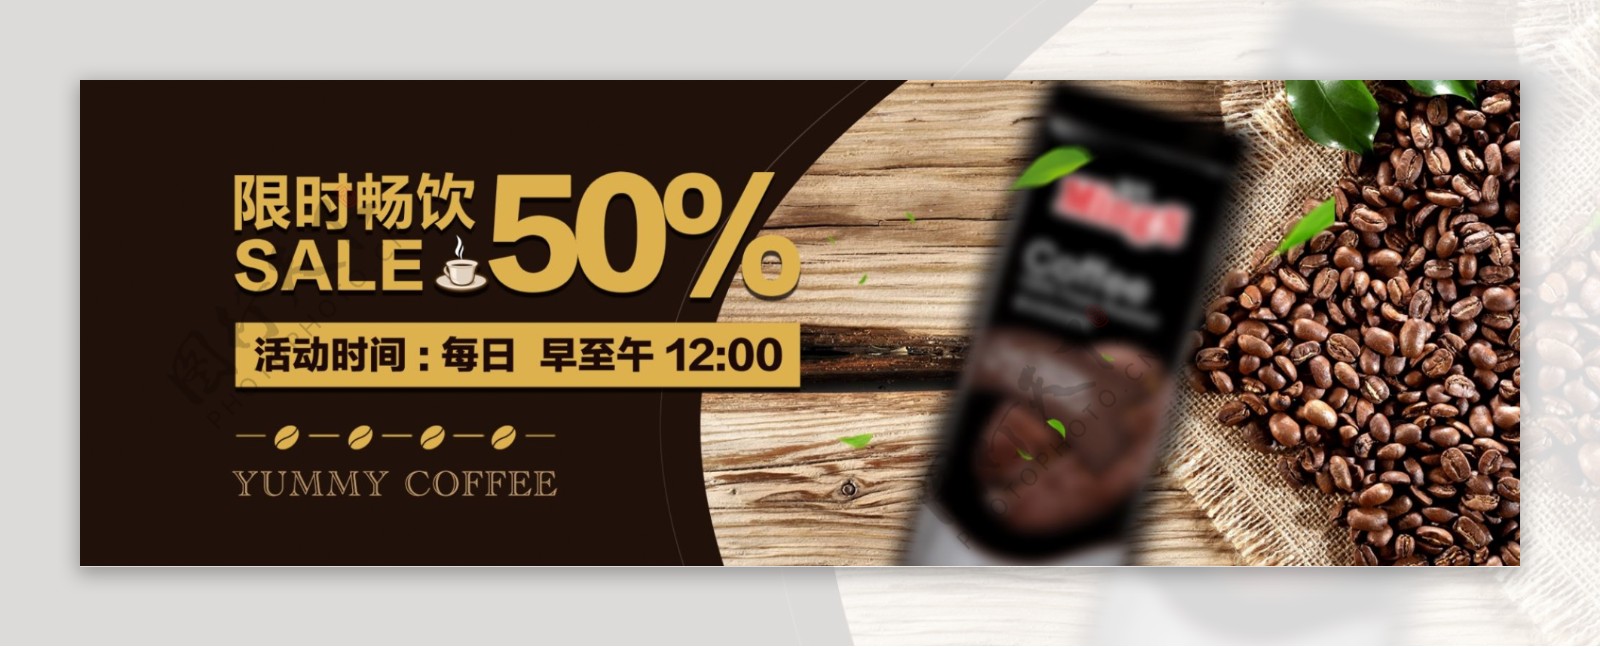 棕色简约咖啡饮料咖啡节电商banner